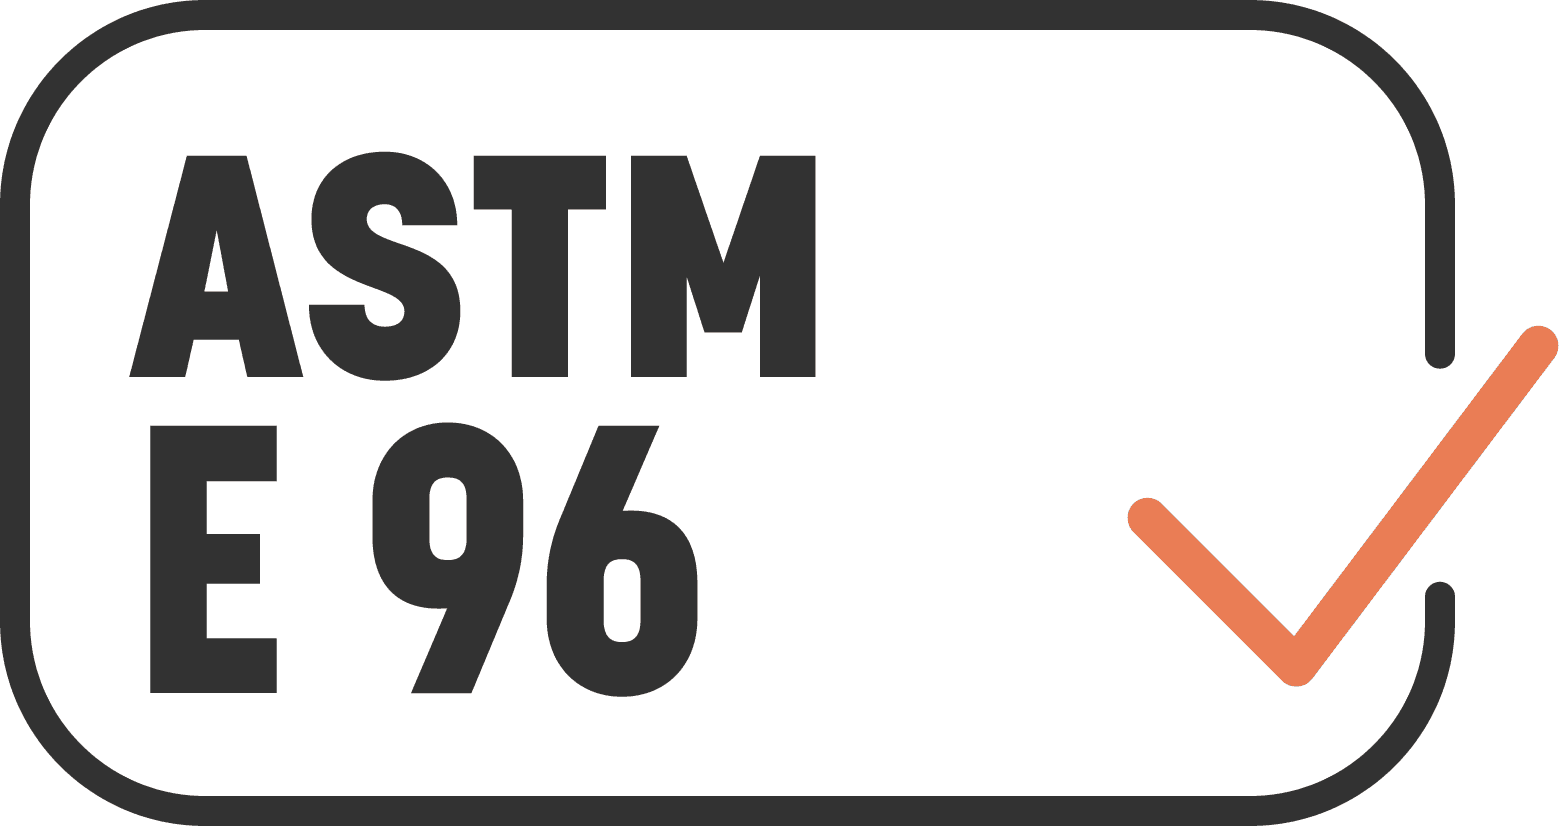 ASTM E 96